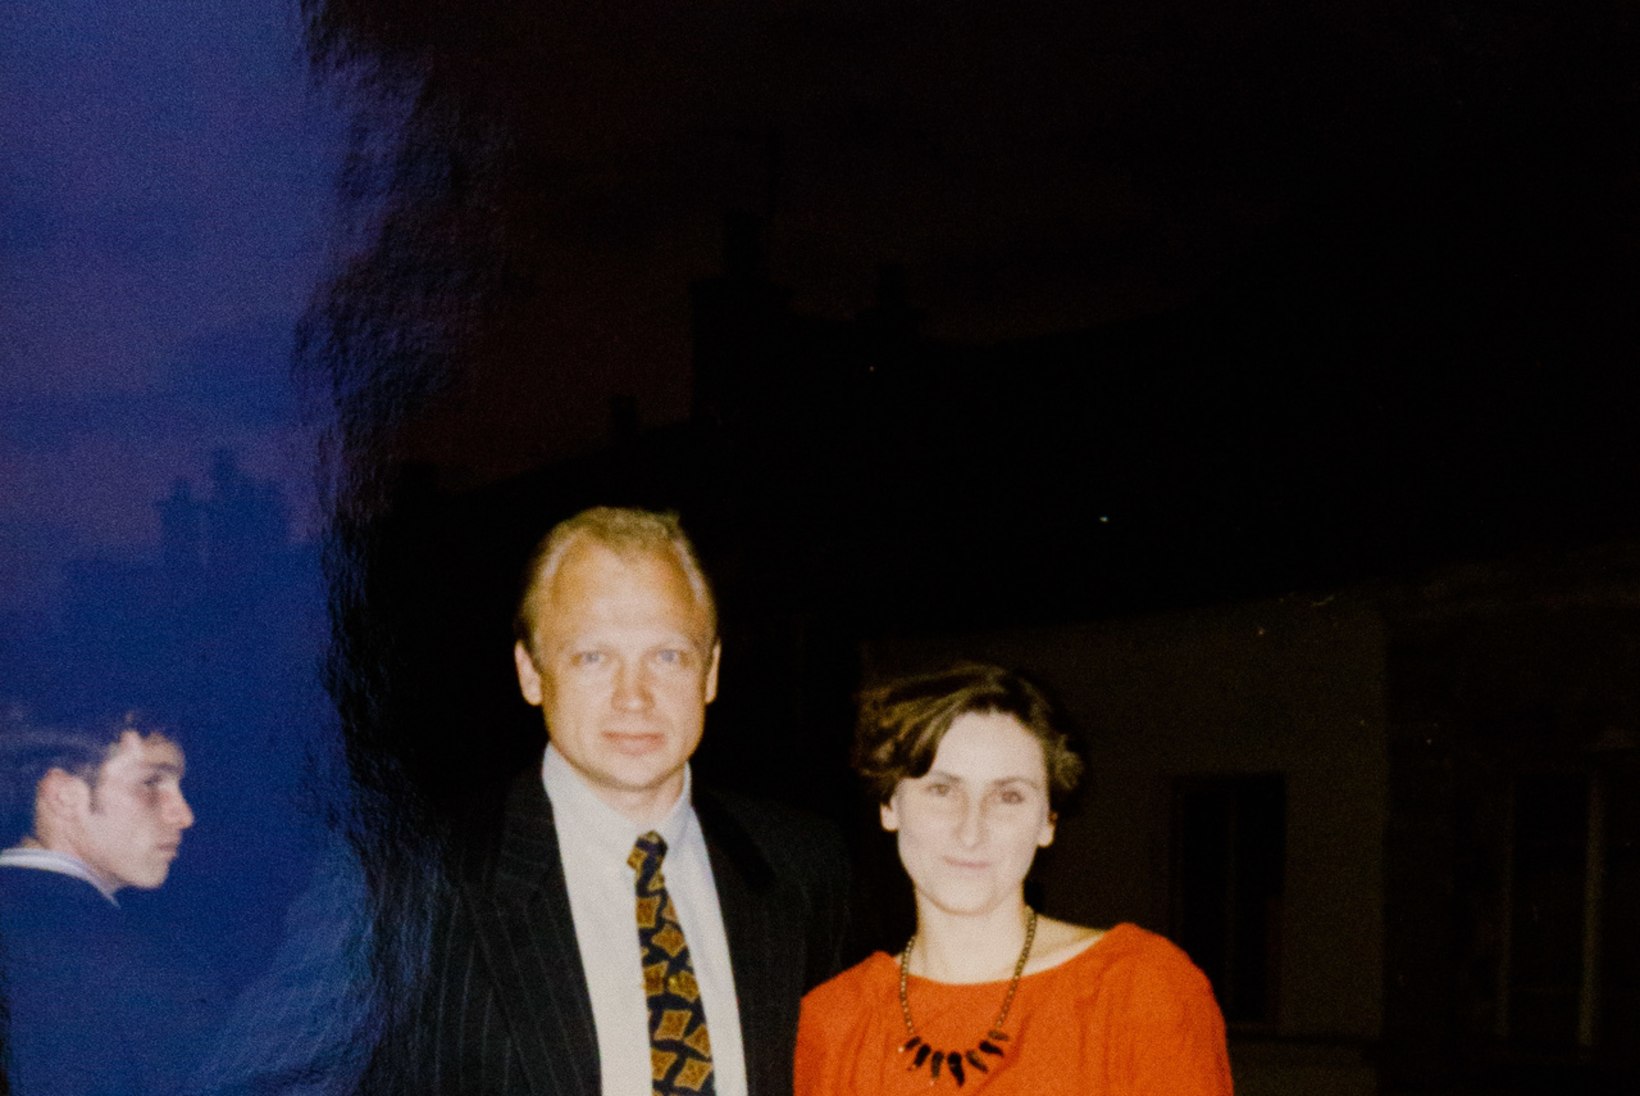 ÕL MOSKVAS | Olümpiavõitja Riisman 1980. aastal: 20 minutit kaklust miilitsaga, hüüe „Elagu vaba Eesti!“ ja kirsalöök näkku